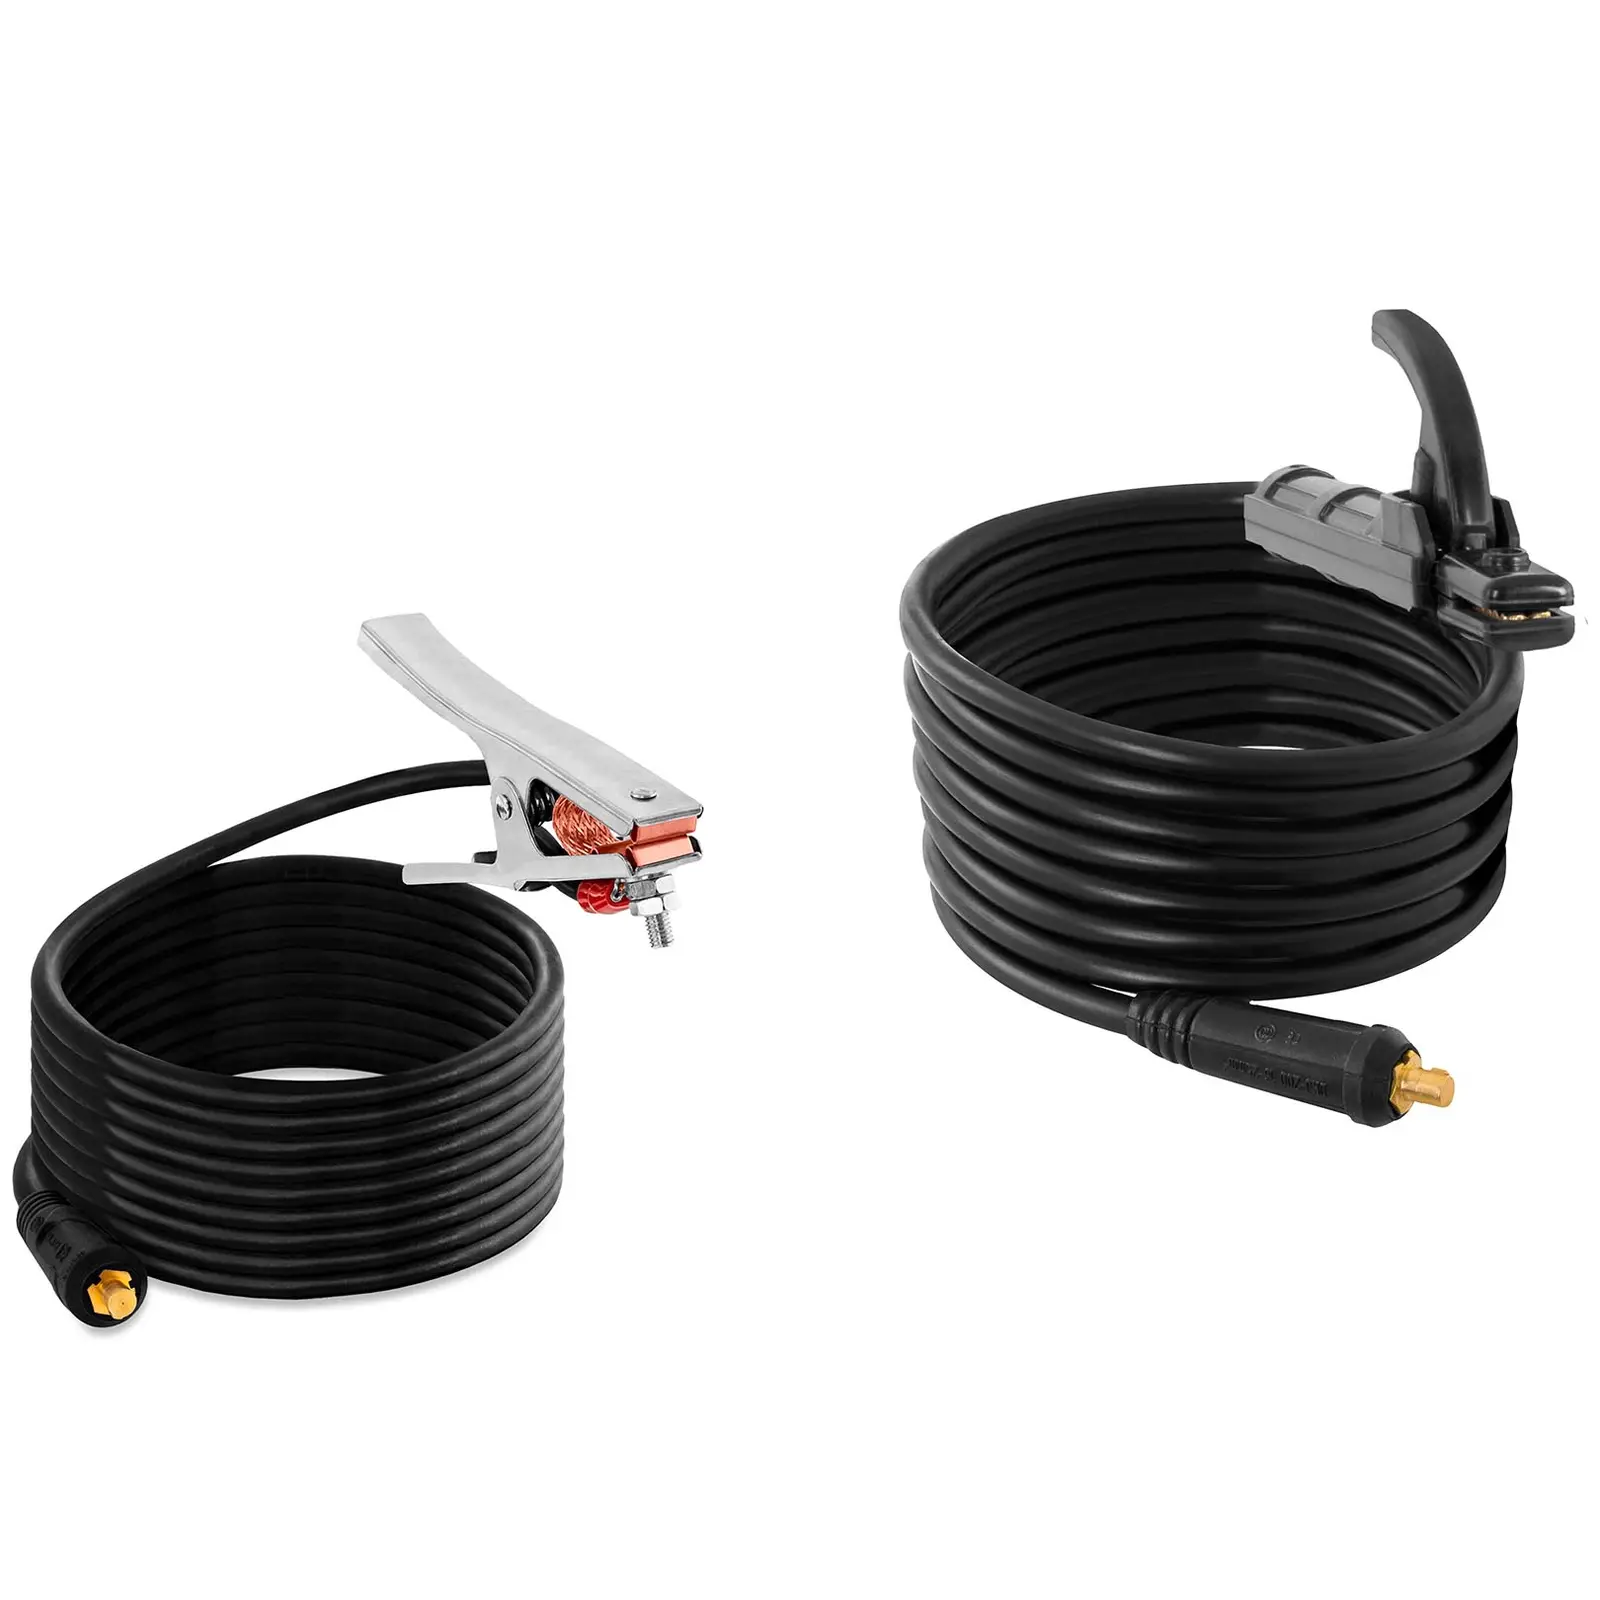 Elektroden Schweißgerät - IGBT - 140 A - Duty Cycle 60 % - 8 m Kabel